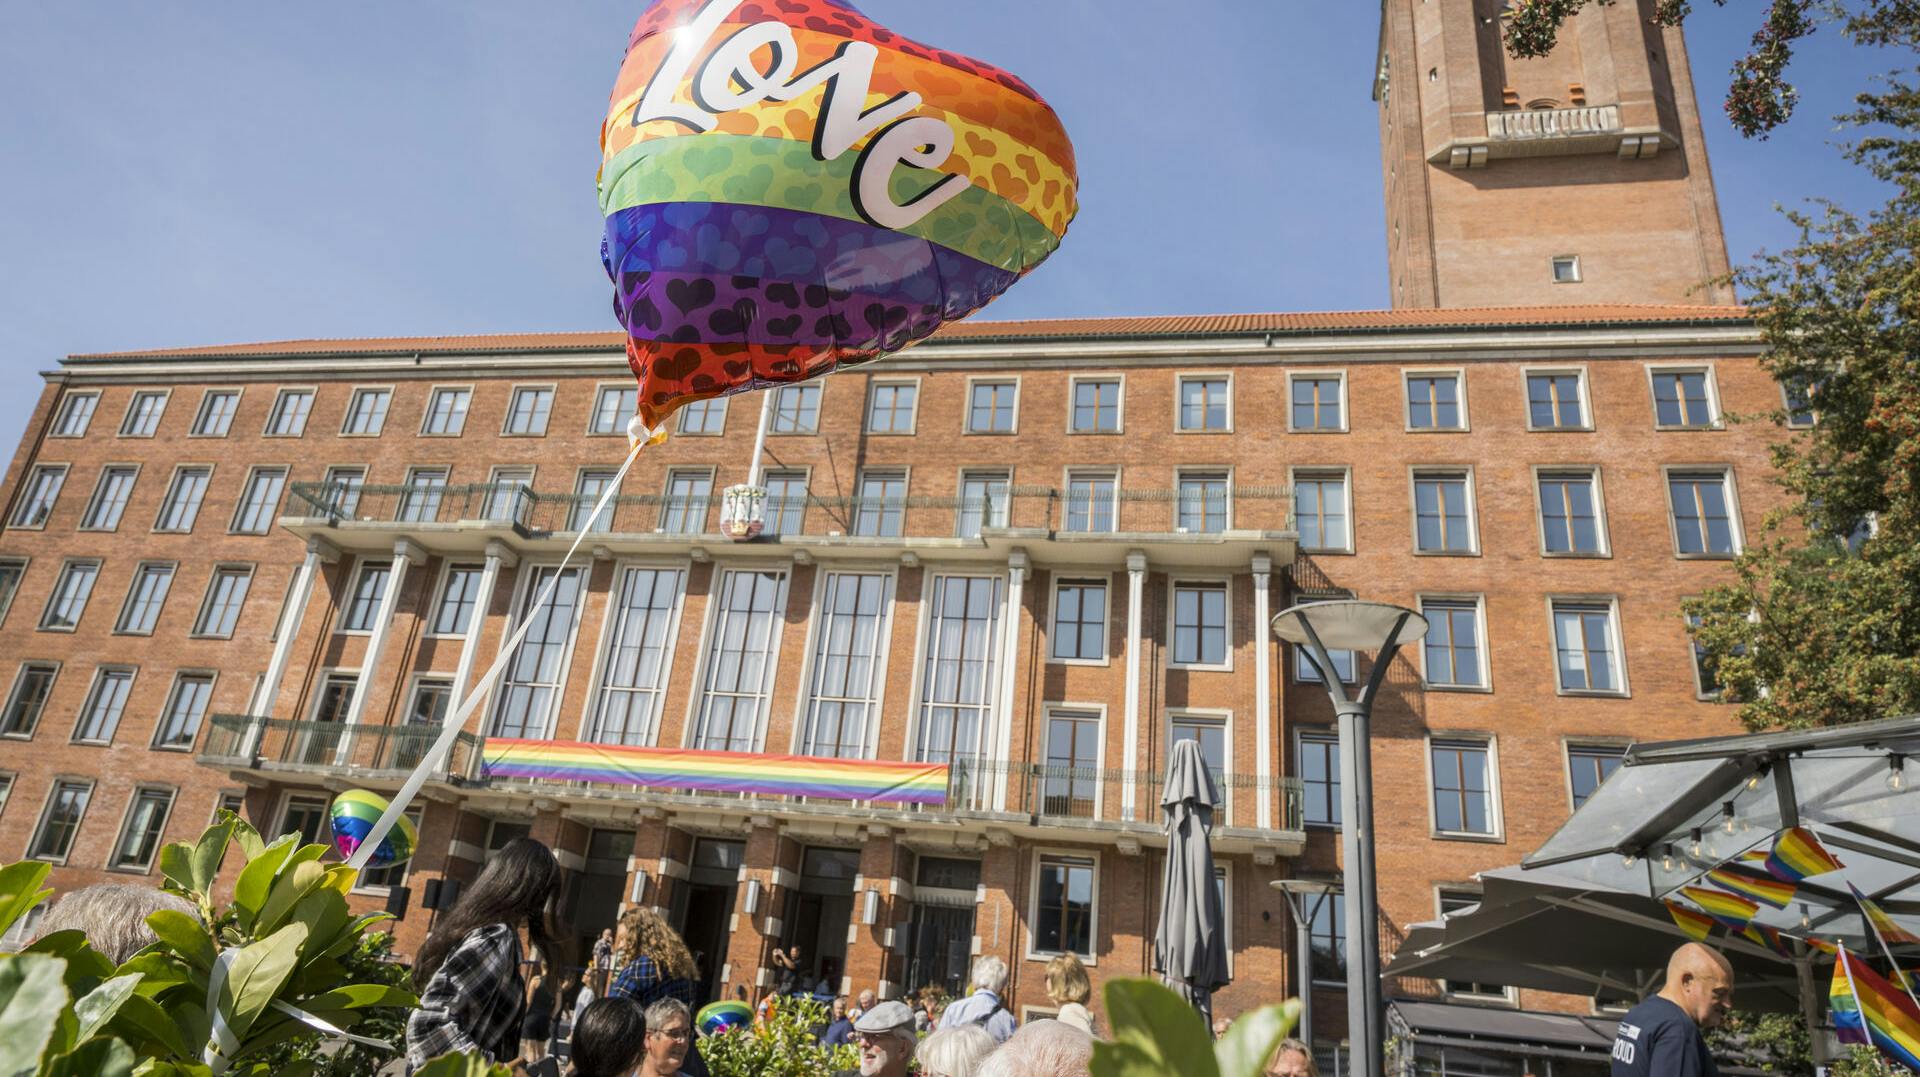 "Love" var ikke i luften hos alle deltagerne under Copenhagen Pride i weekenden. Flere blev udsat for hadforbrydelser.